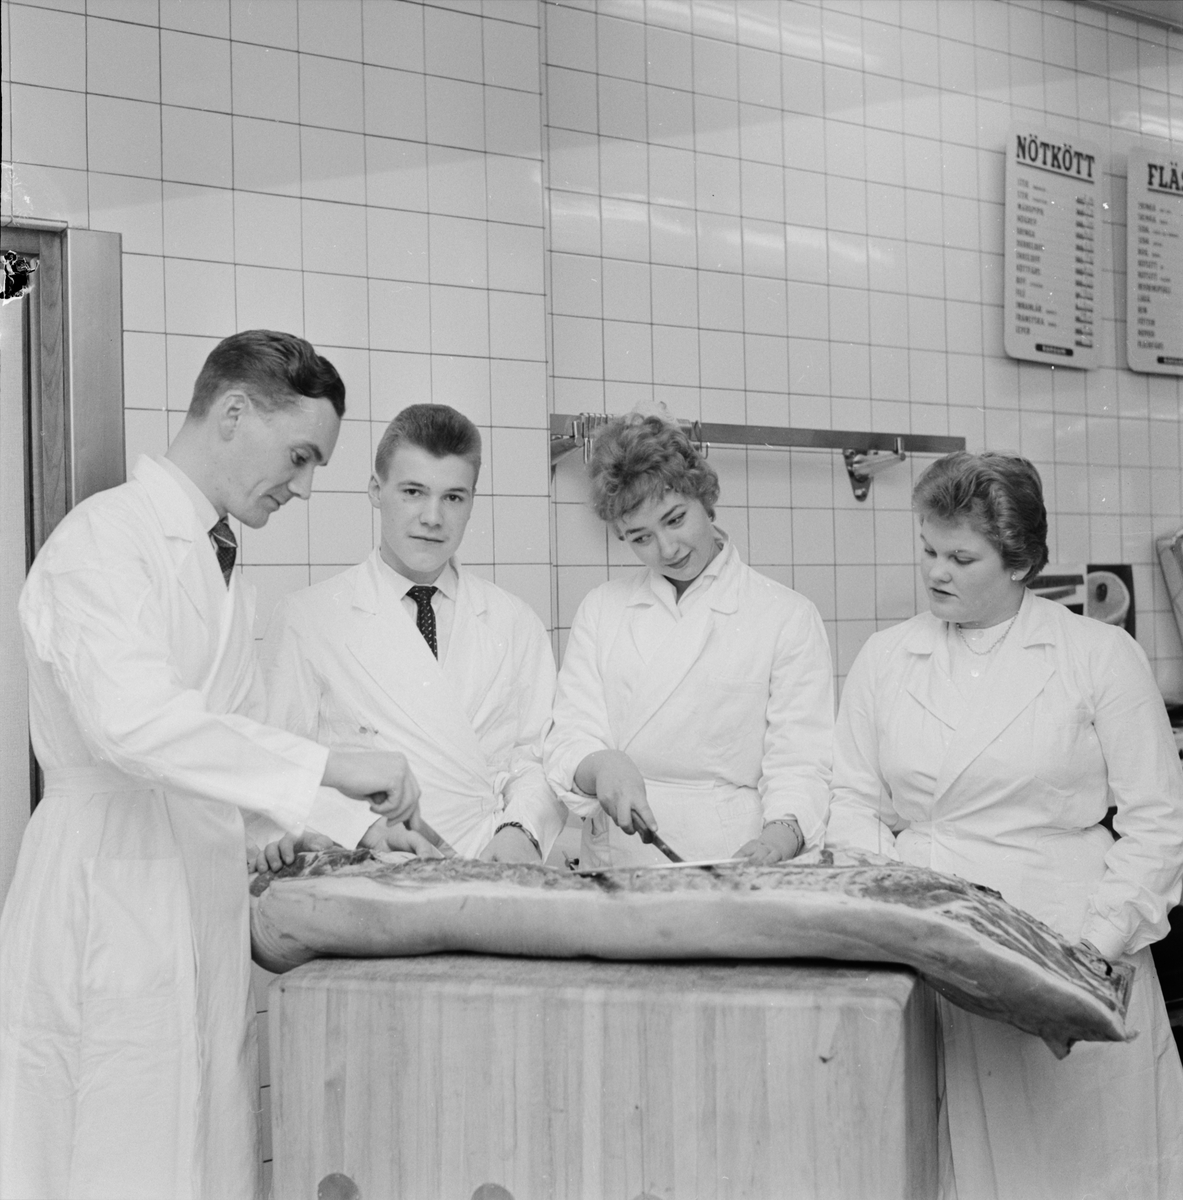 Snabbköpskurs - Bengt Rohne visar kursdeltagare hur man styckar kött, Uppsala 1959